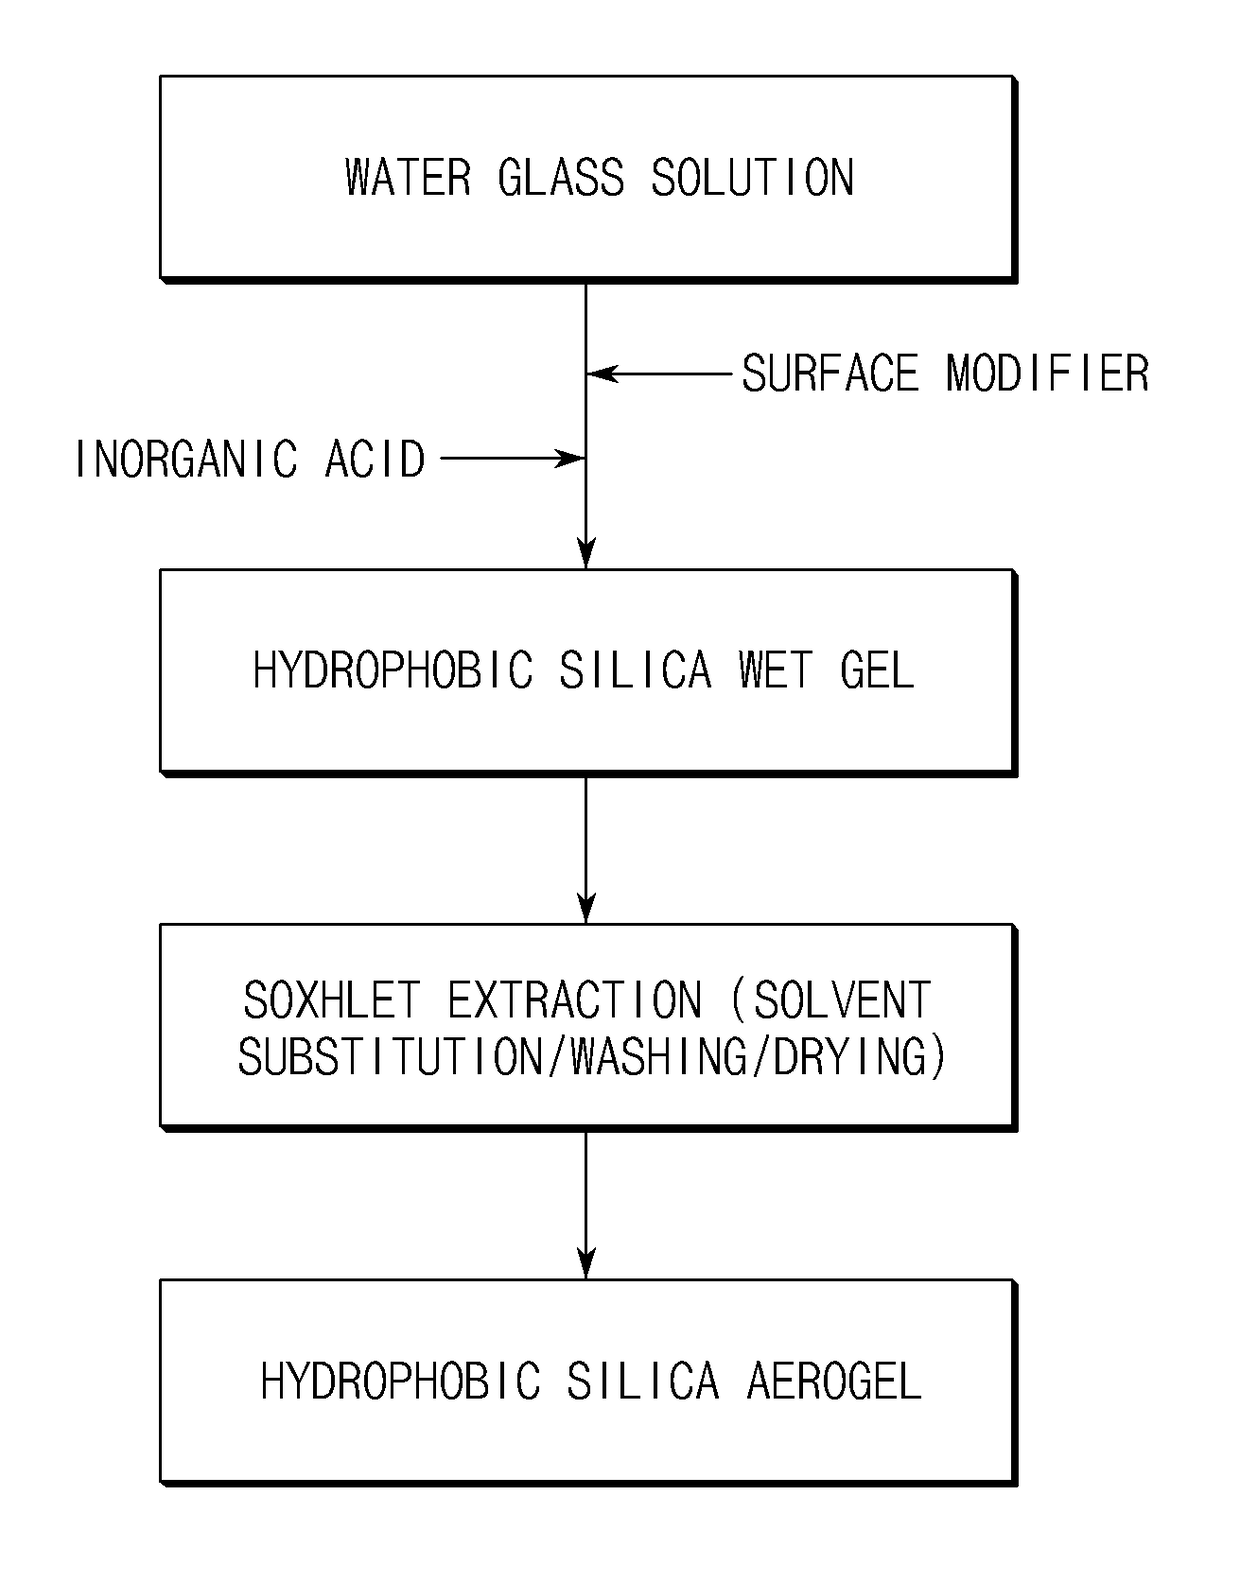 Preparation method of hydrophobic silica aerogel